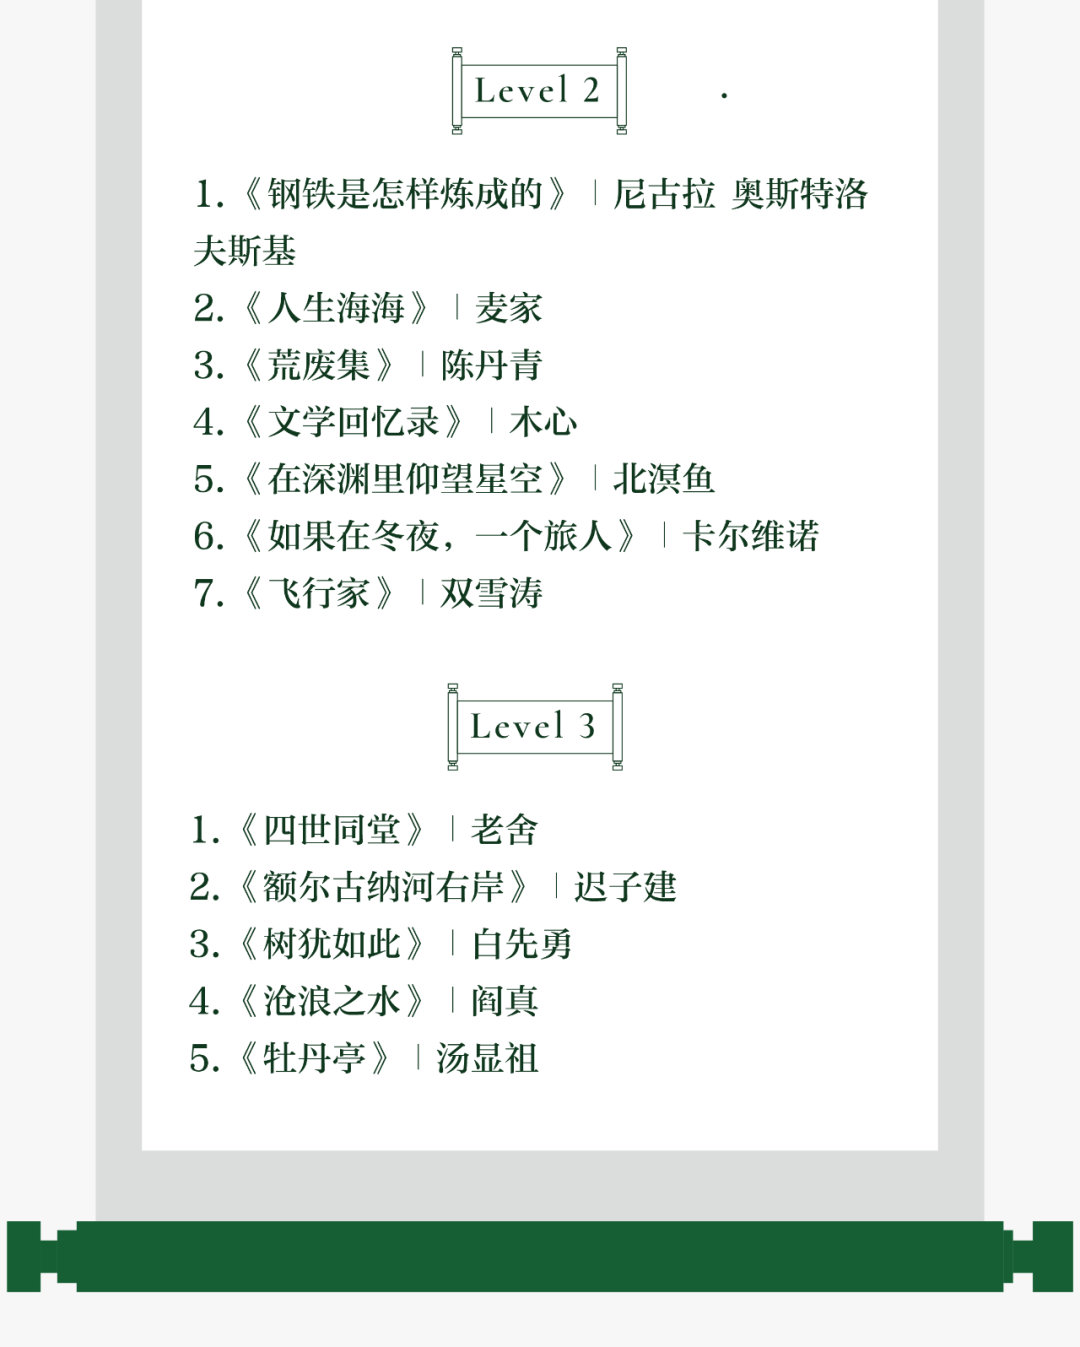 互动送书｜MCQ中文系老师独家推荐「四季书单」！